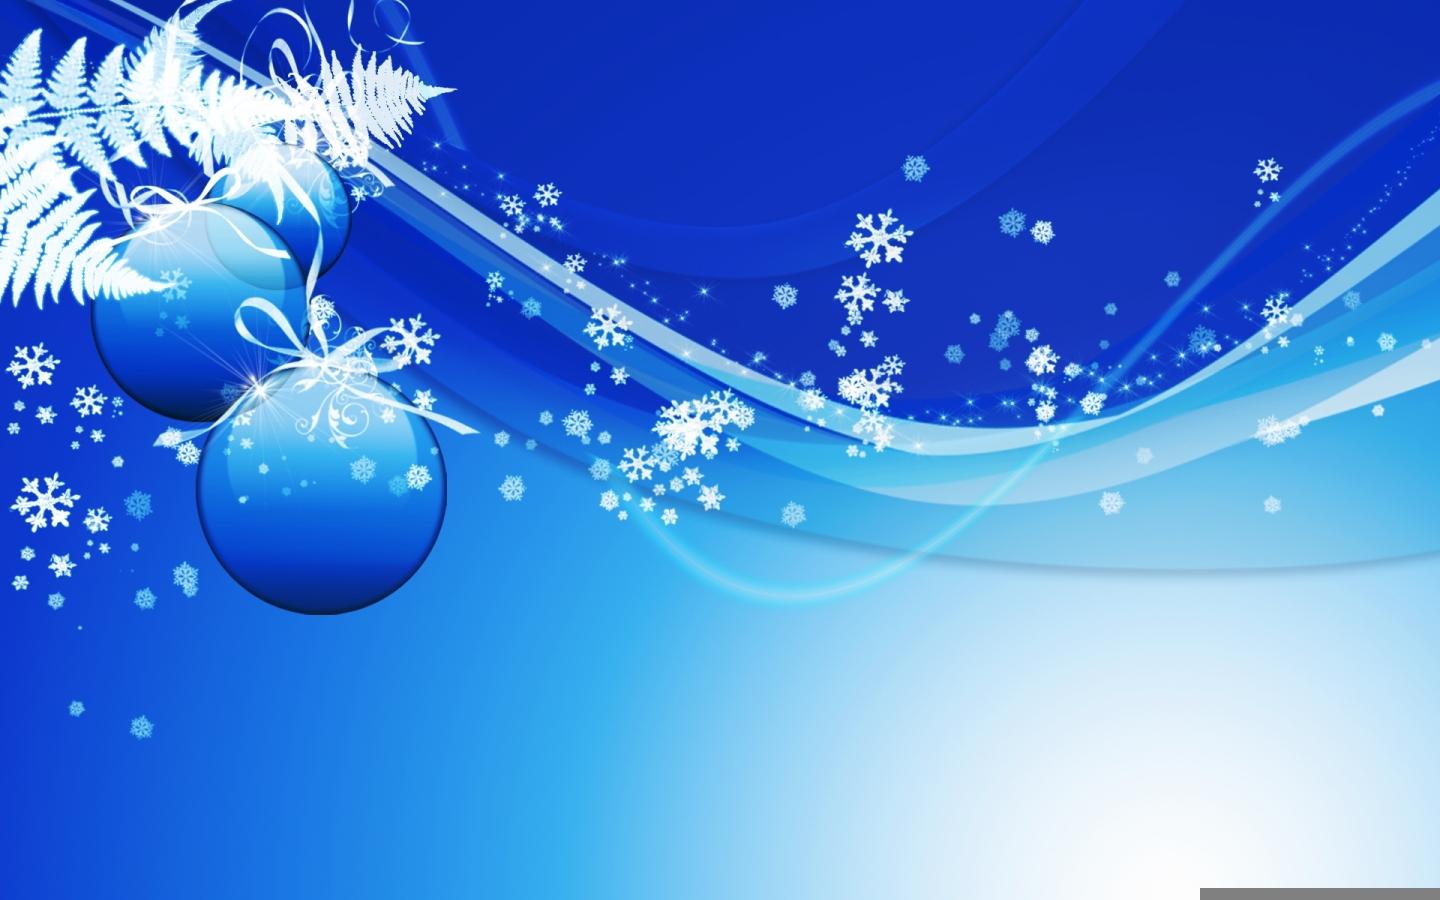 Blue Christmas Design Widescreen Wallpaper. Wide Wallpaper.NET